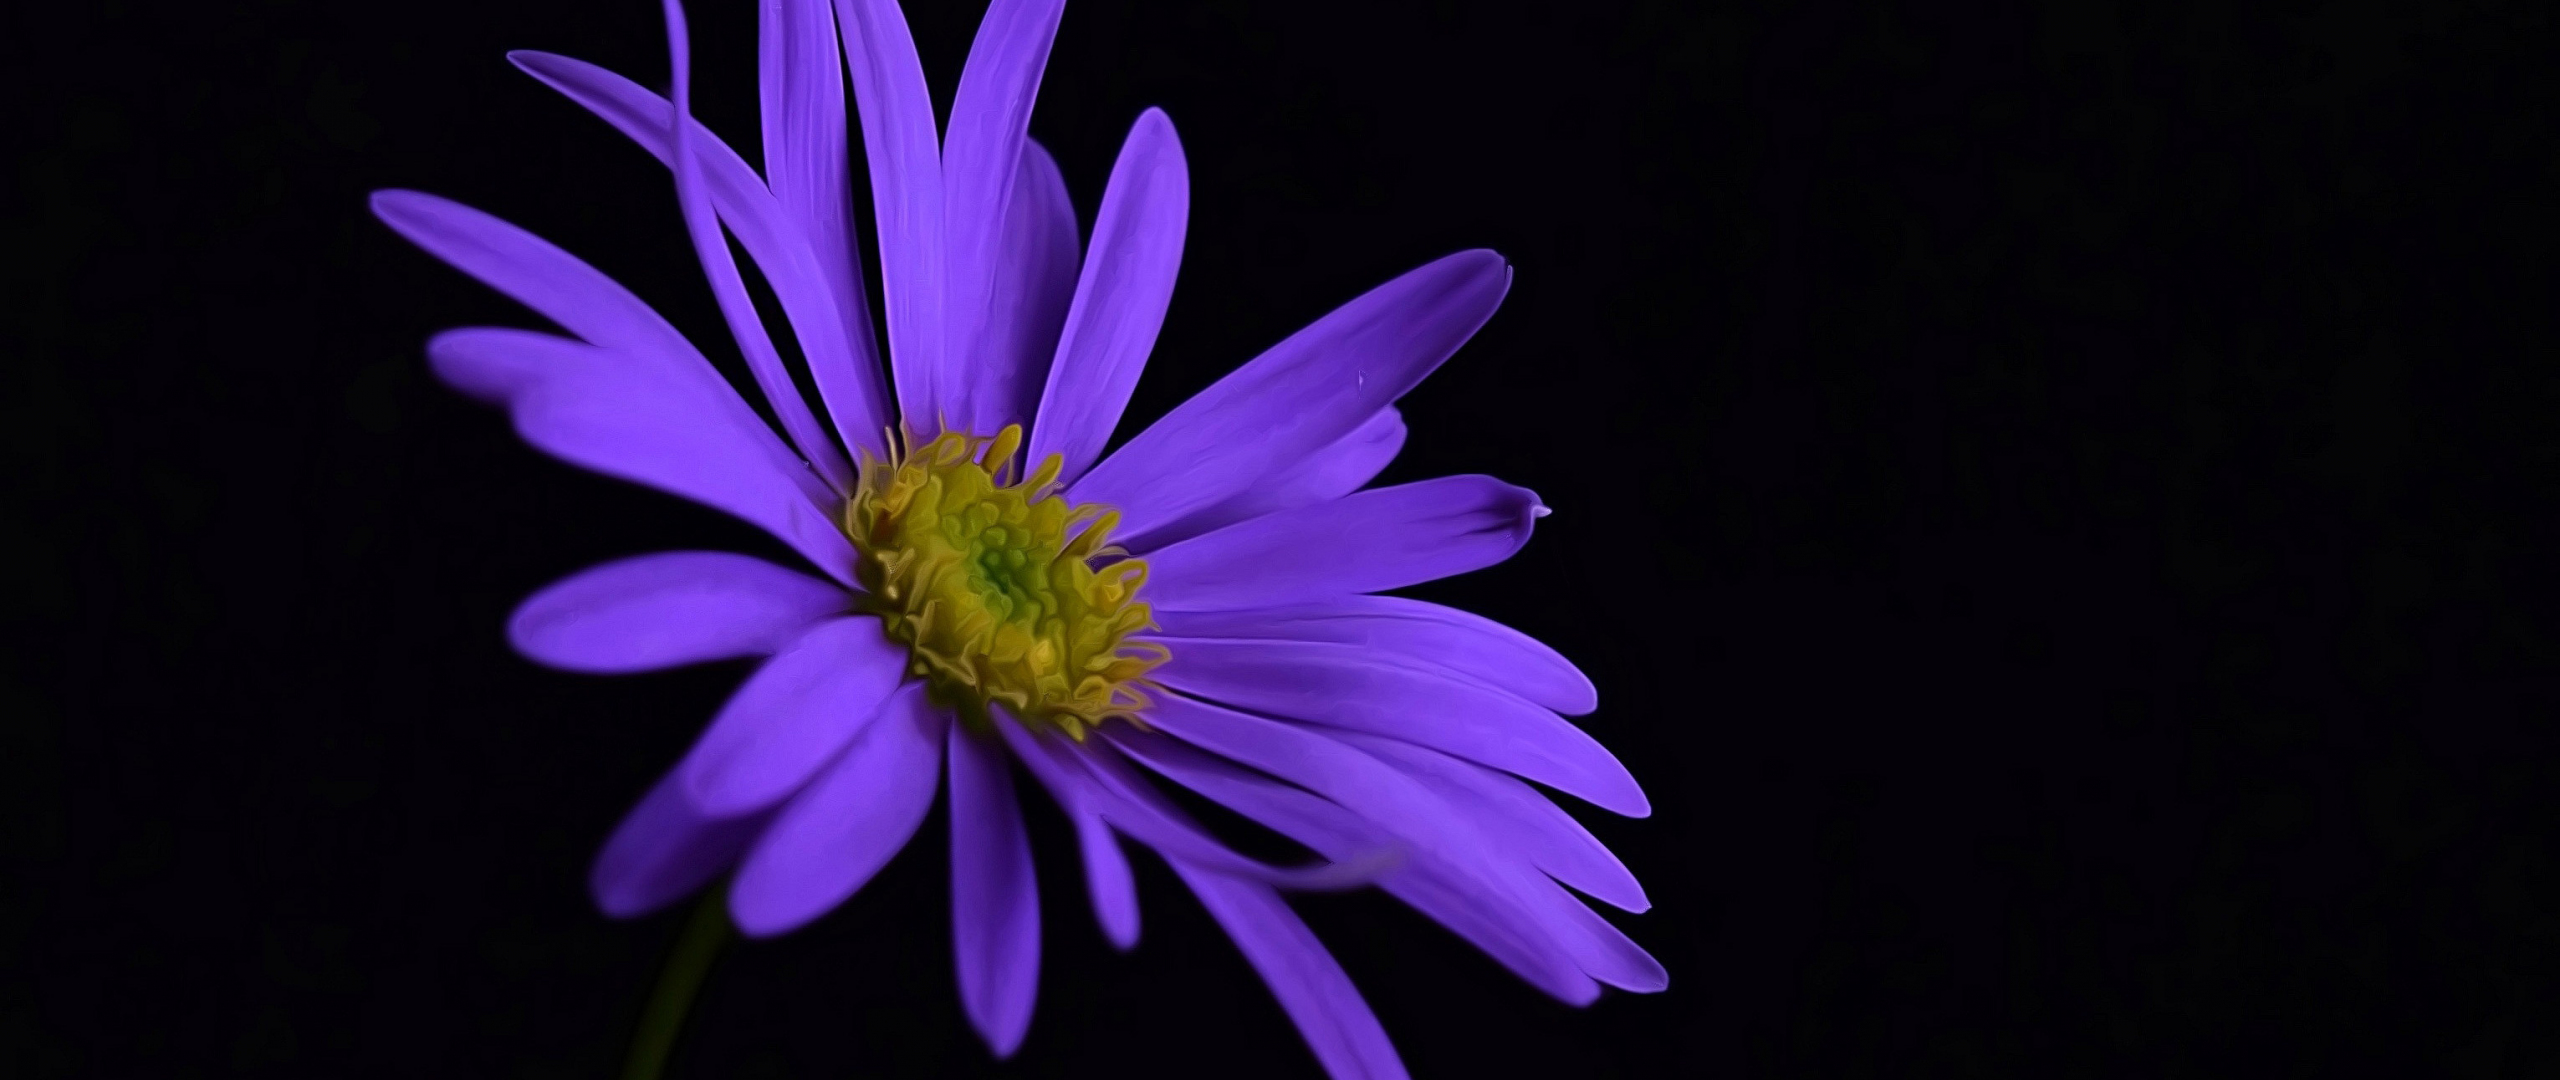 Desktop Wallpaper Purple Flower, Portrait, Blossom, Hd Image, Picture ...